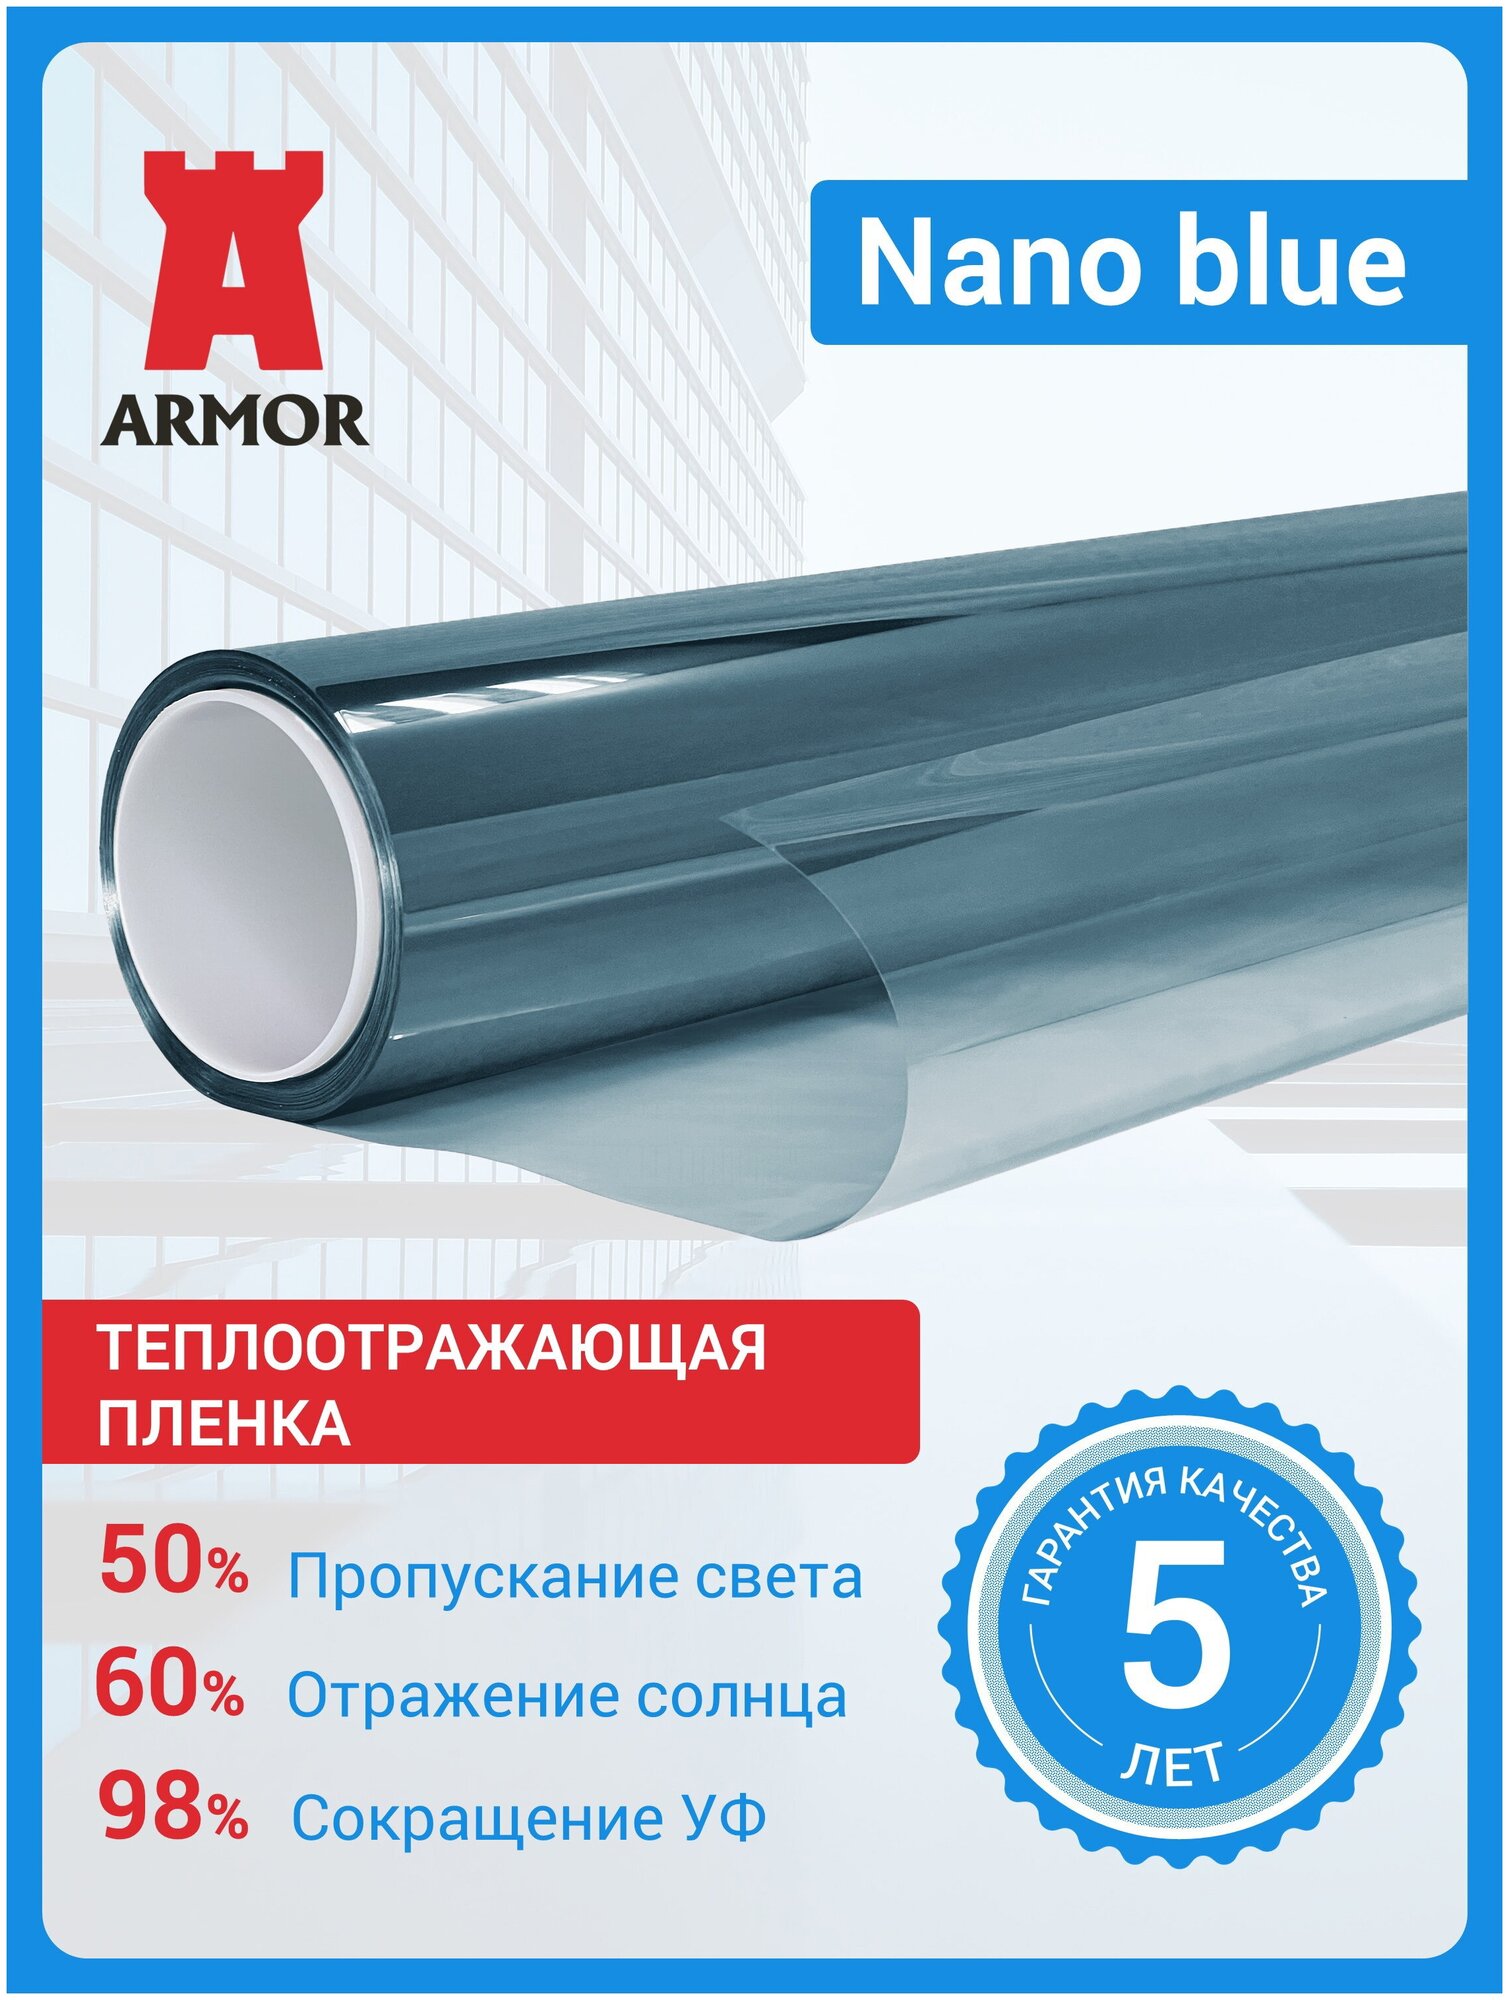 Теплоотражающая пленка для окон и стекол Nano Blue цвет - голубой размер 152 х 1м.